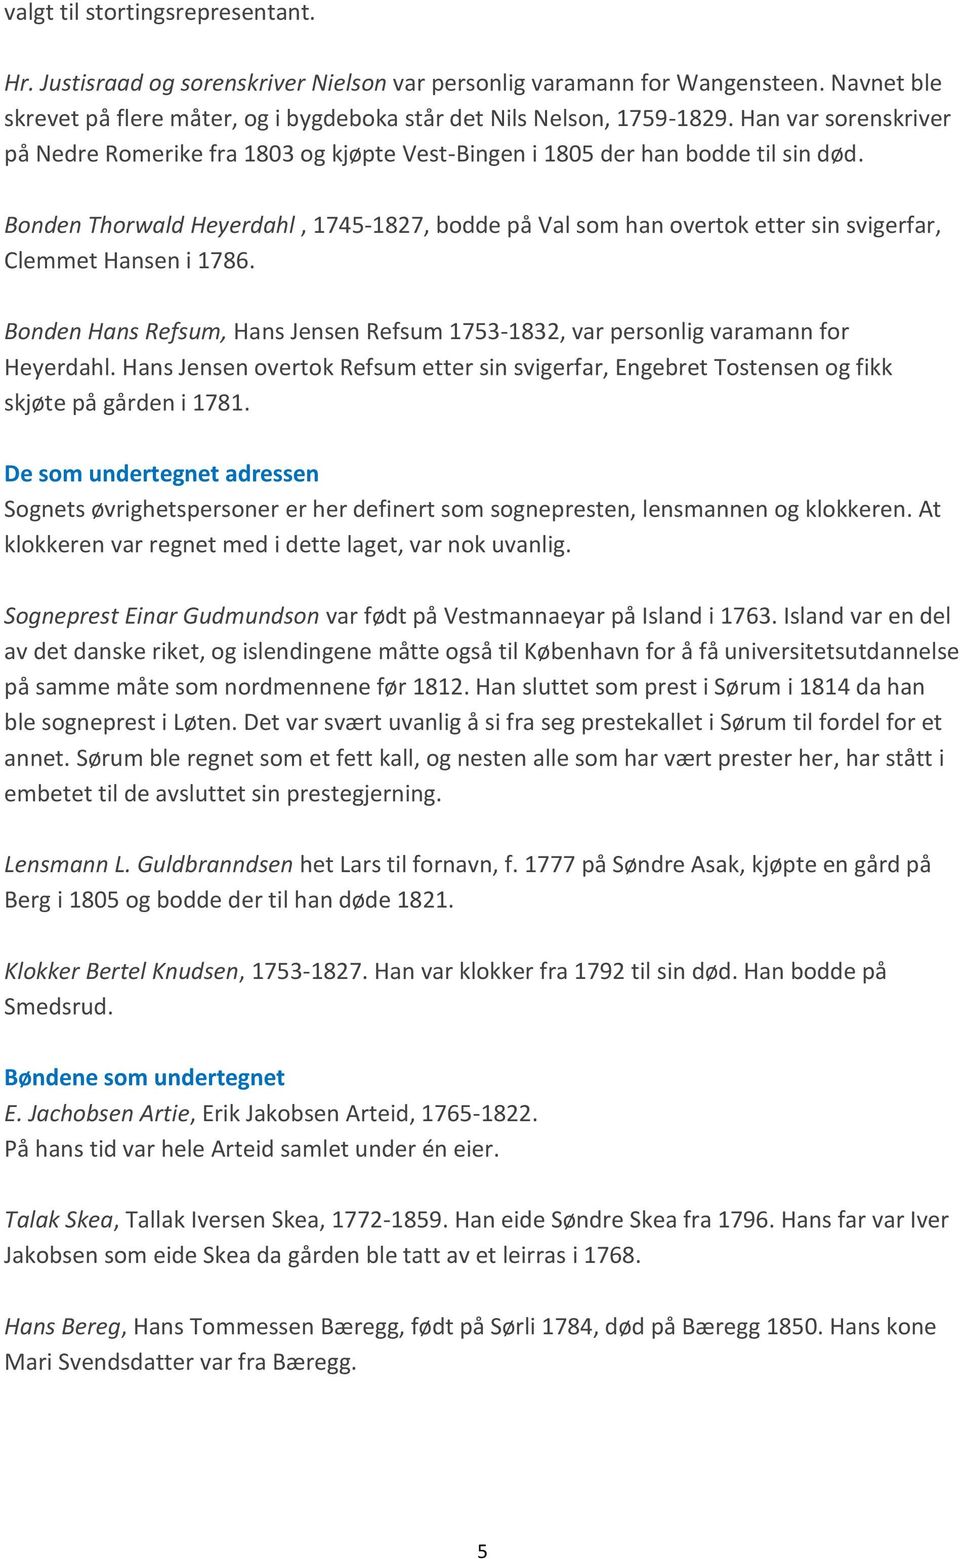 Bonden Thorwald Heyerdahl, 1745-1827, bodde på Val som han overtok etter sin svigerfar, Clemmet Hansen i 1786. Bonden Hans Refsum, Hans Jensen Refsum 1753-1832, var personlig varamann for Heyerdahl.